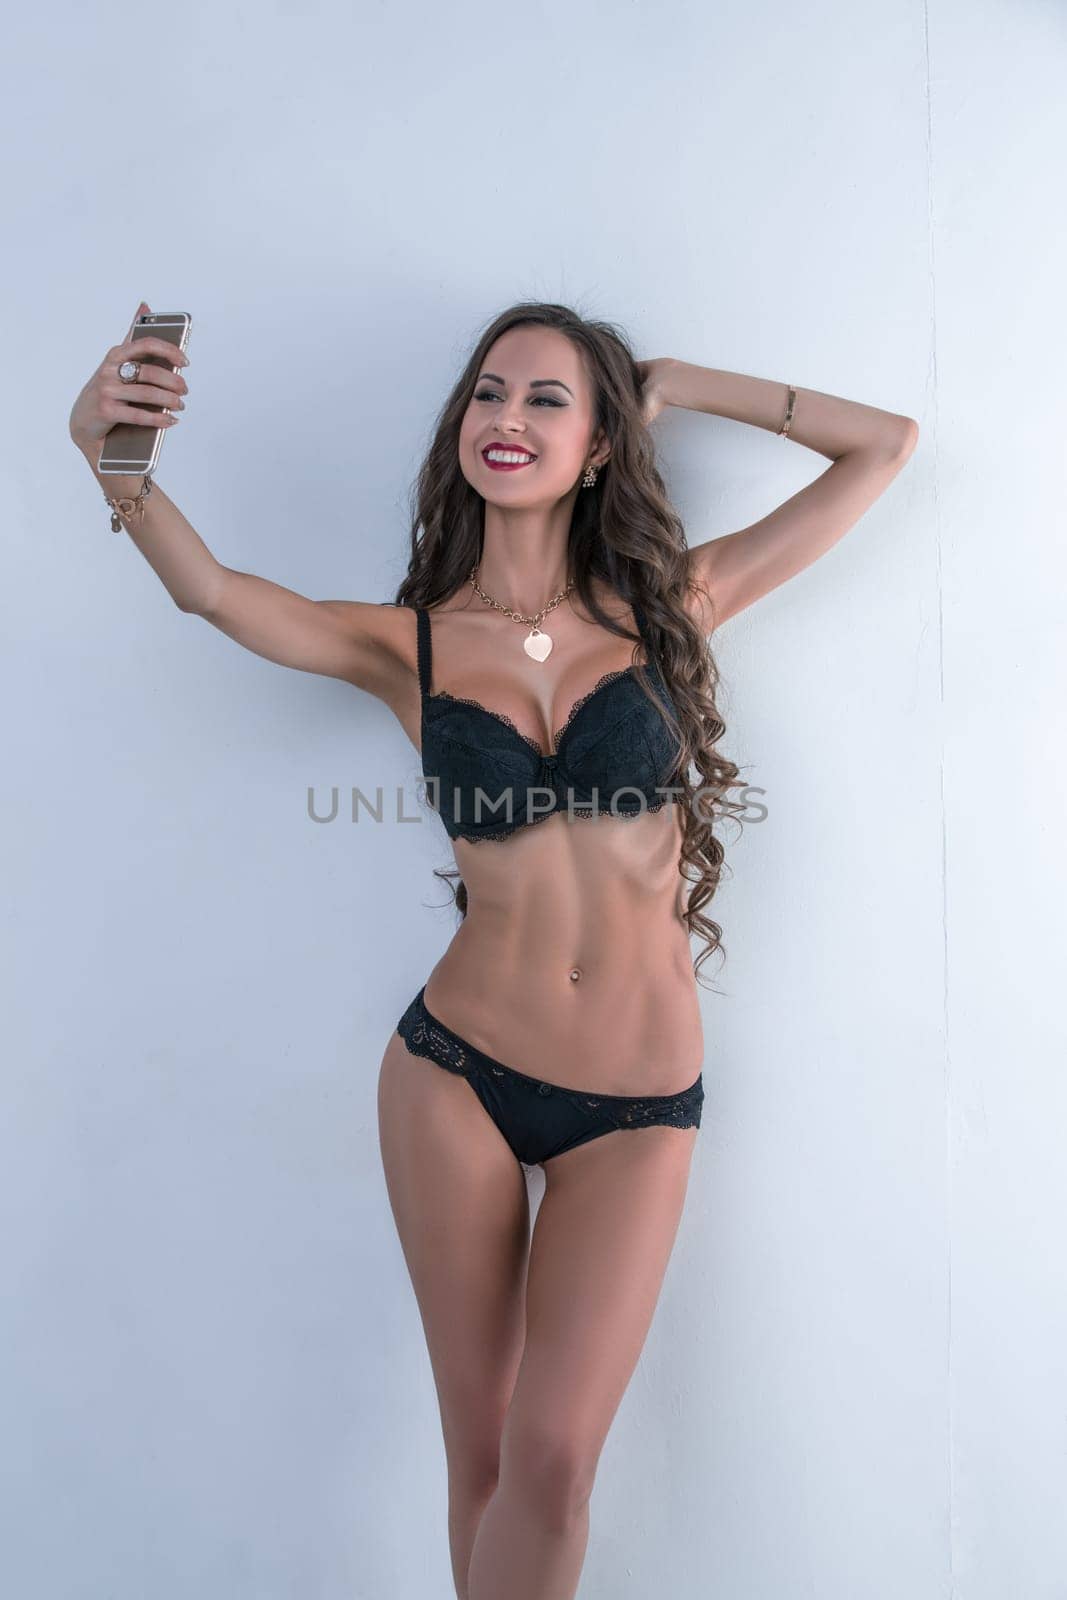 Sexy model in underwear doing selfie on her smartphone